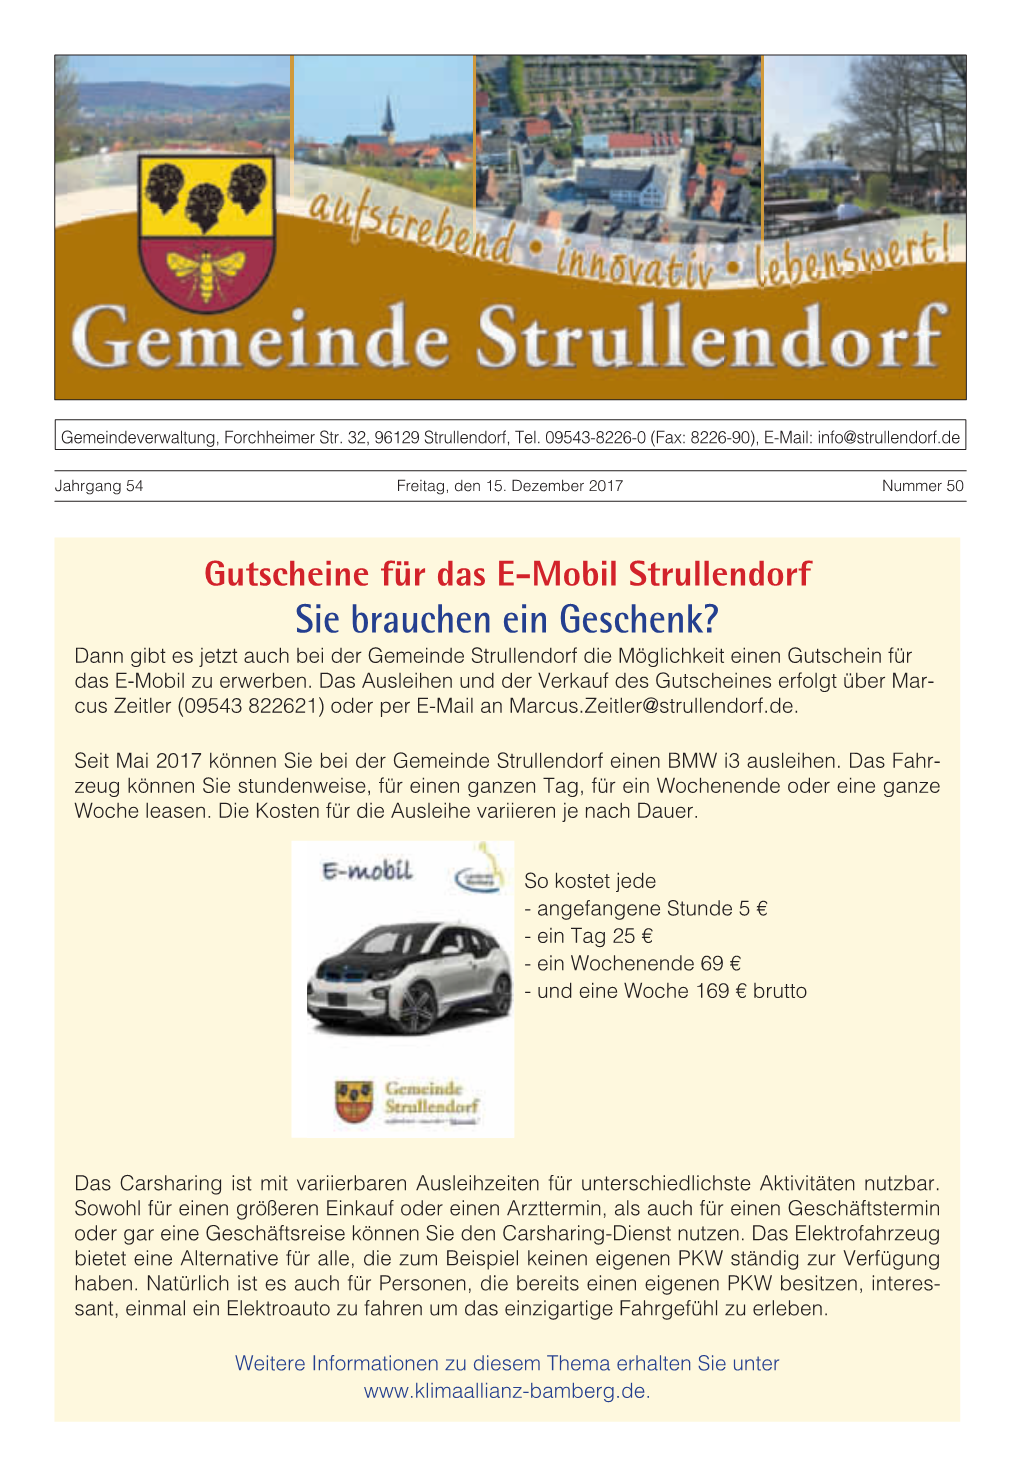 Mitteilungsblatt Strullendorf 50 2017